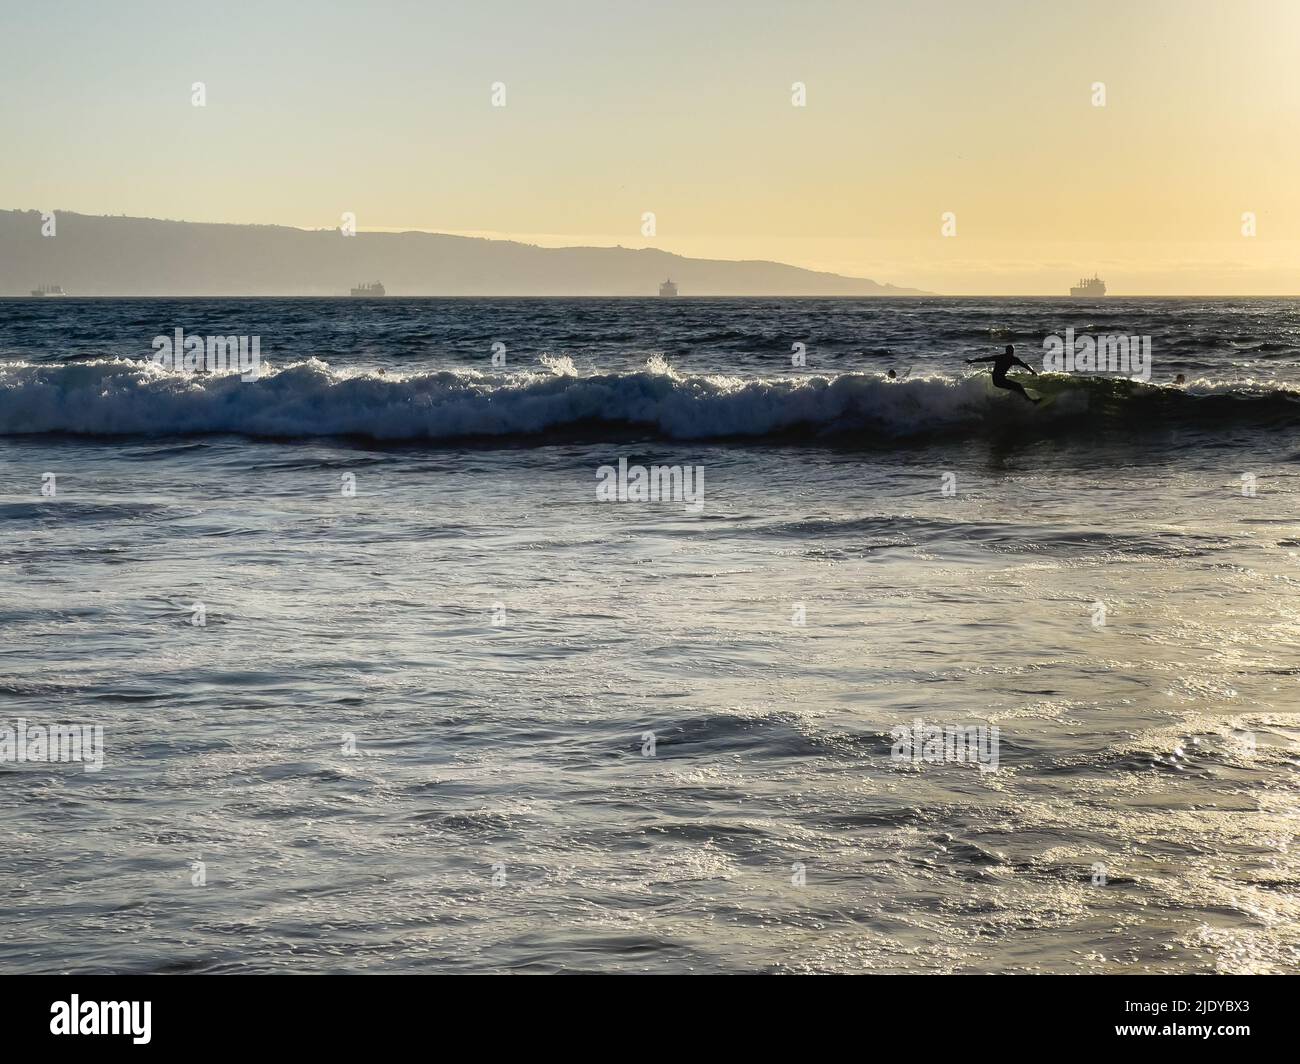 Mann Silhouette Surfen Wellen bei Sonnenuntergang am Strand mit Frachtschiffen durch Valparaiso Hafen im Hintergrund in Chile. Sommerkonzept für Wassersport Stockfoto